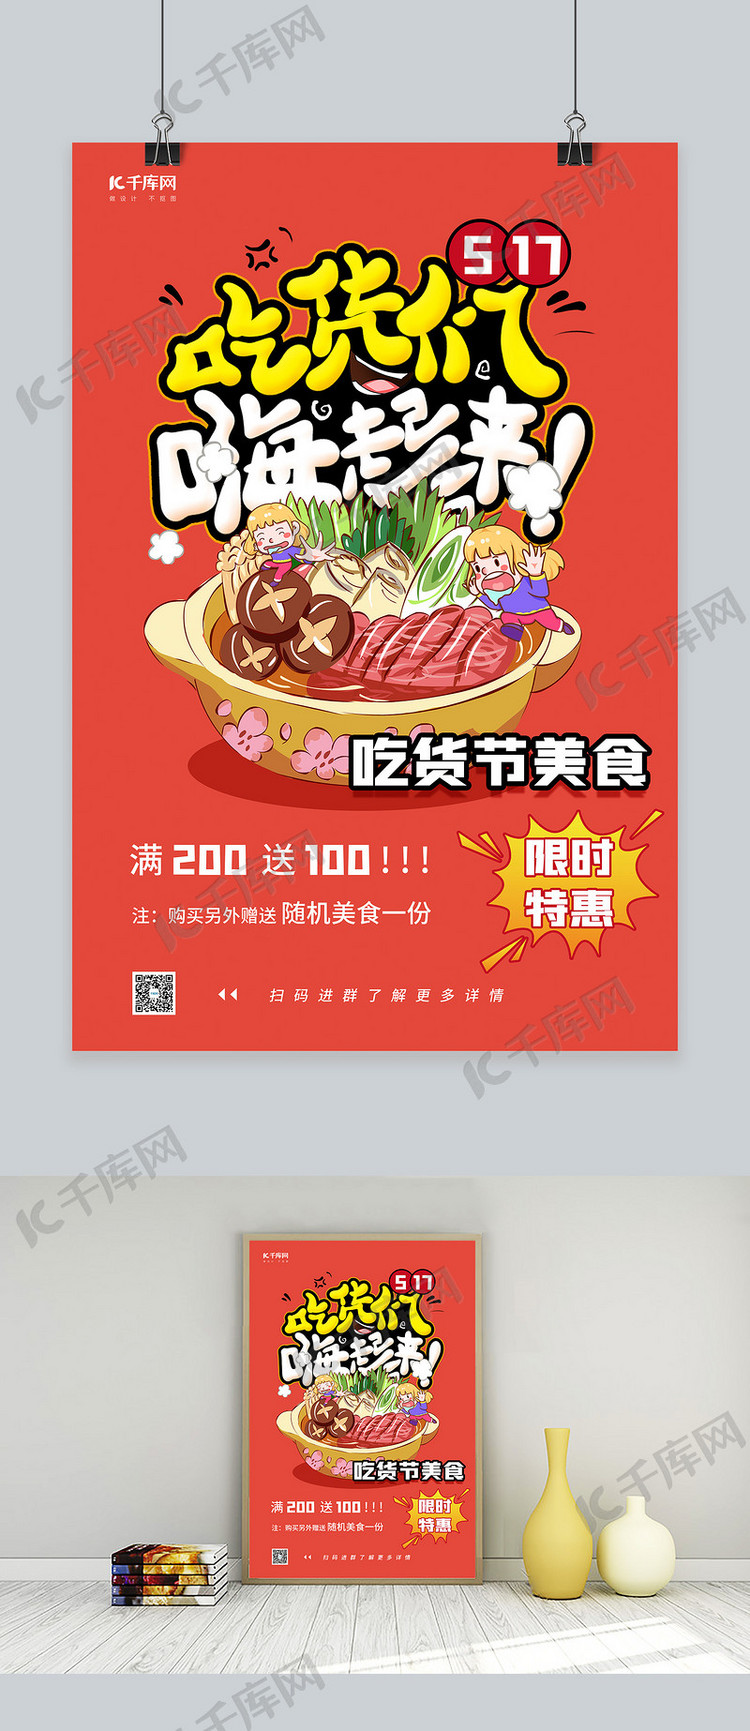 517吃货节火锅美食红色卡通促销海报